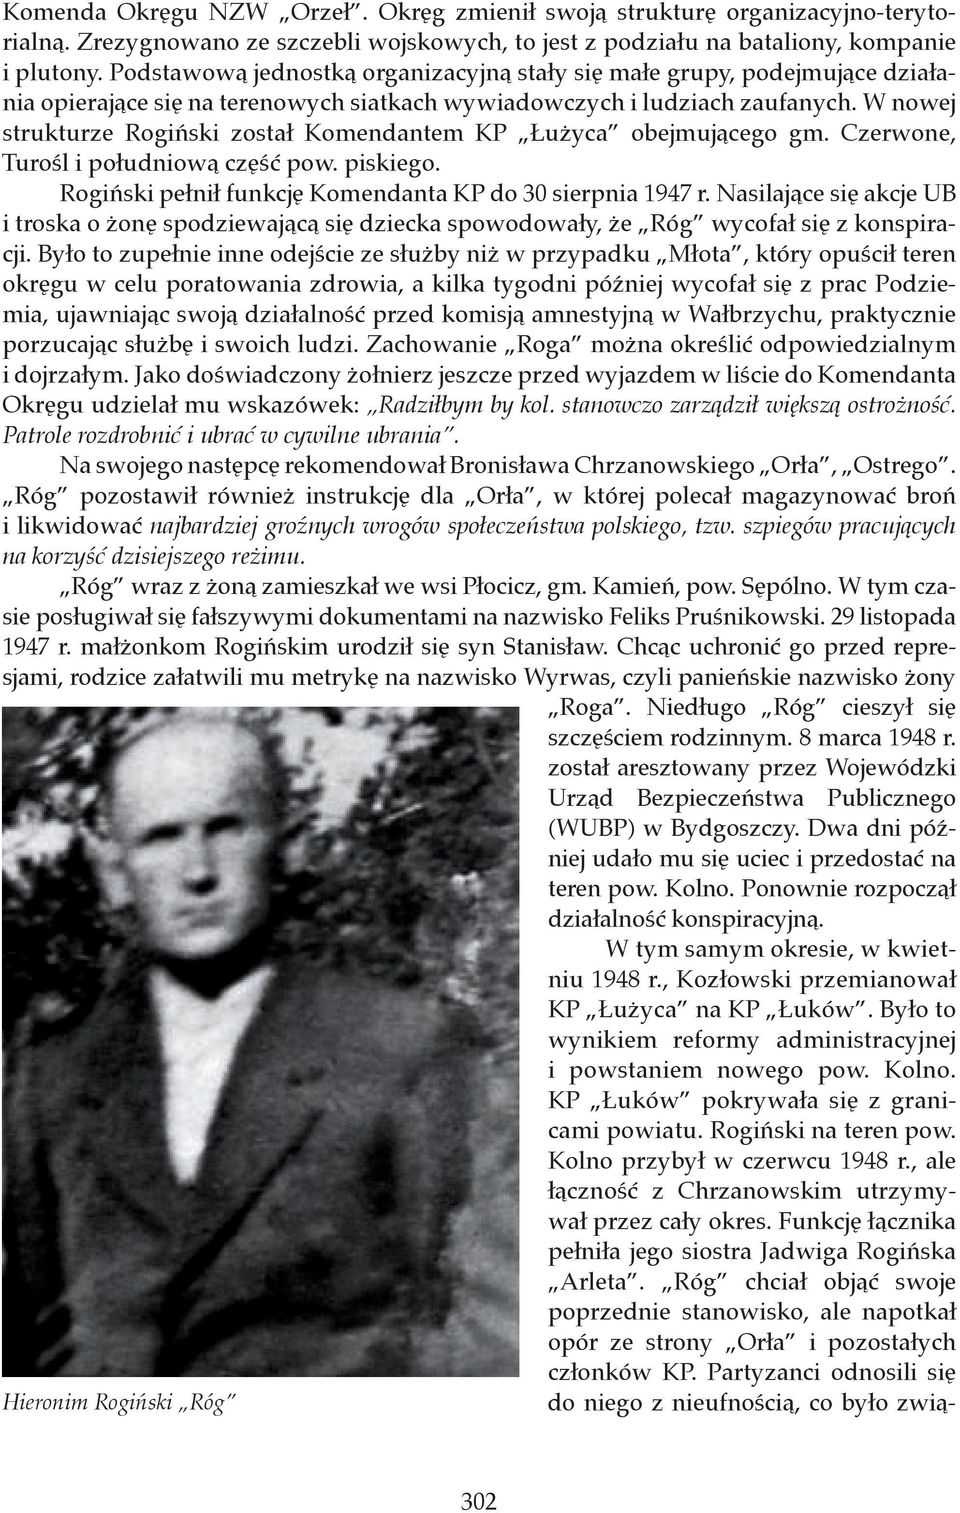 W nowej strukturze Rogiński został Komendantem KP Łużyca obejmującego gm. Czerwone, Turośl i południową część pow. piskiego. Rogiński pełnił funkcję Komendanta KP do 30 sierpnia 1947 r.